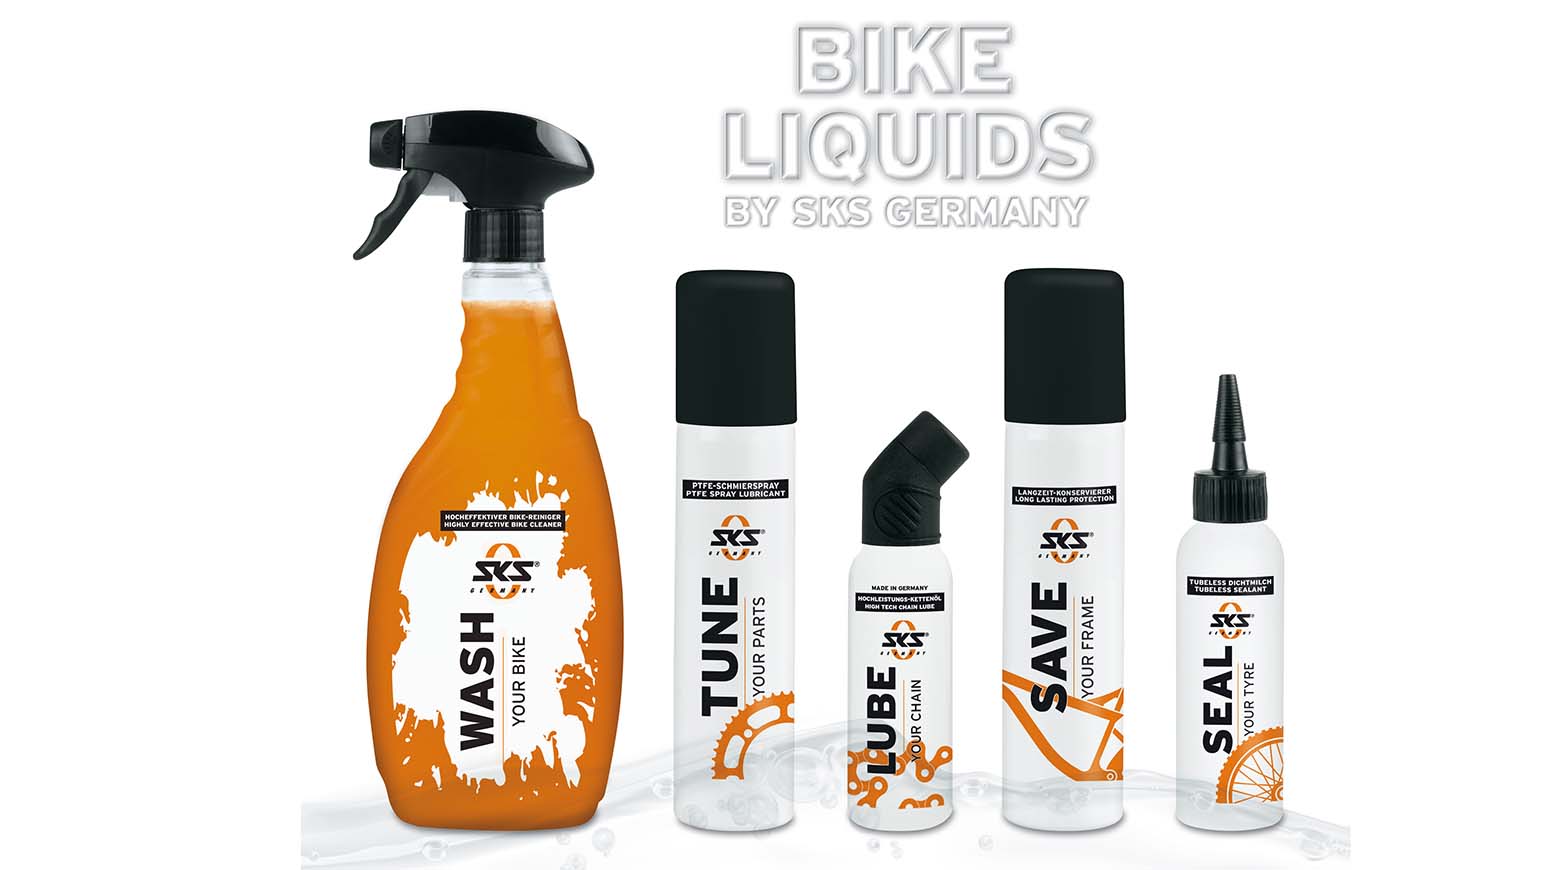 Bike Liquids by SKS Germany - so heißt das neue Radpflege-Programm von SKS